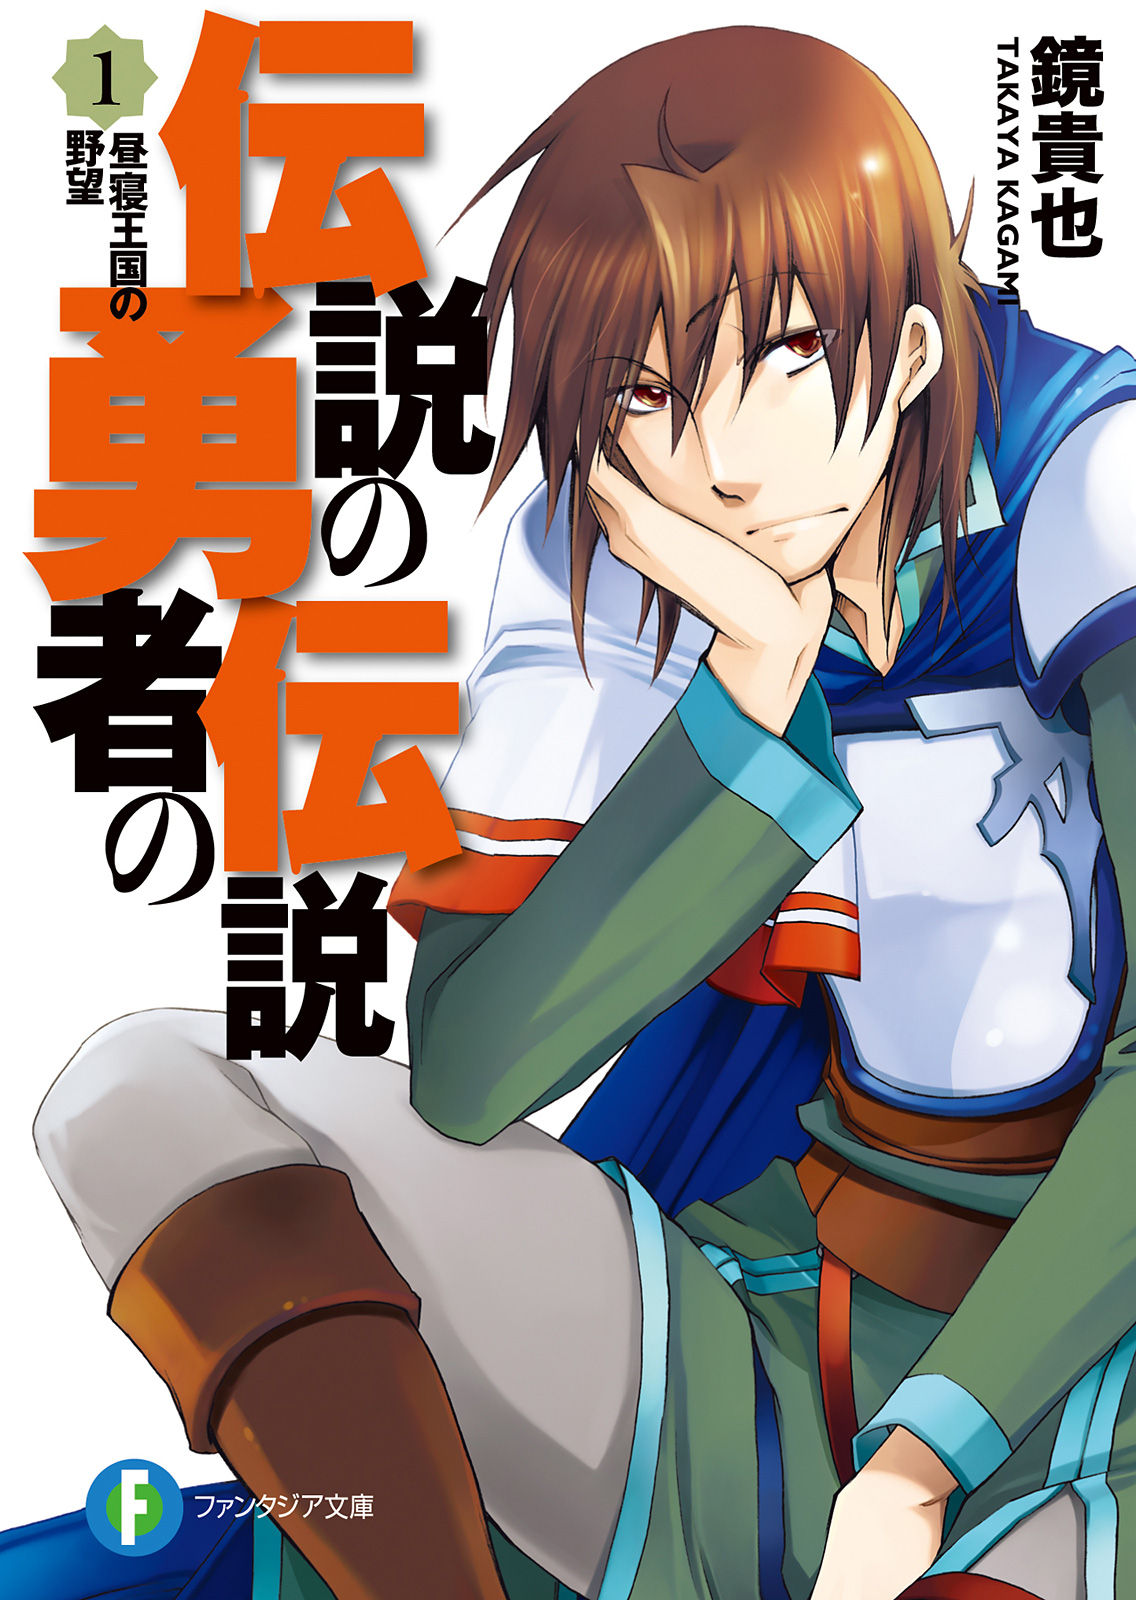 Toriaezu Densetsu no Yuusha no Densetsu (Light Novel) Manga